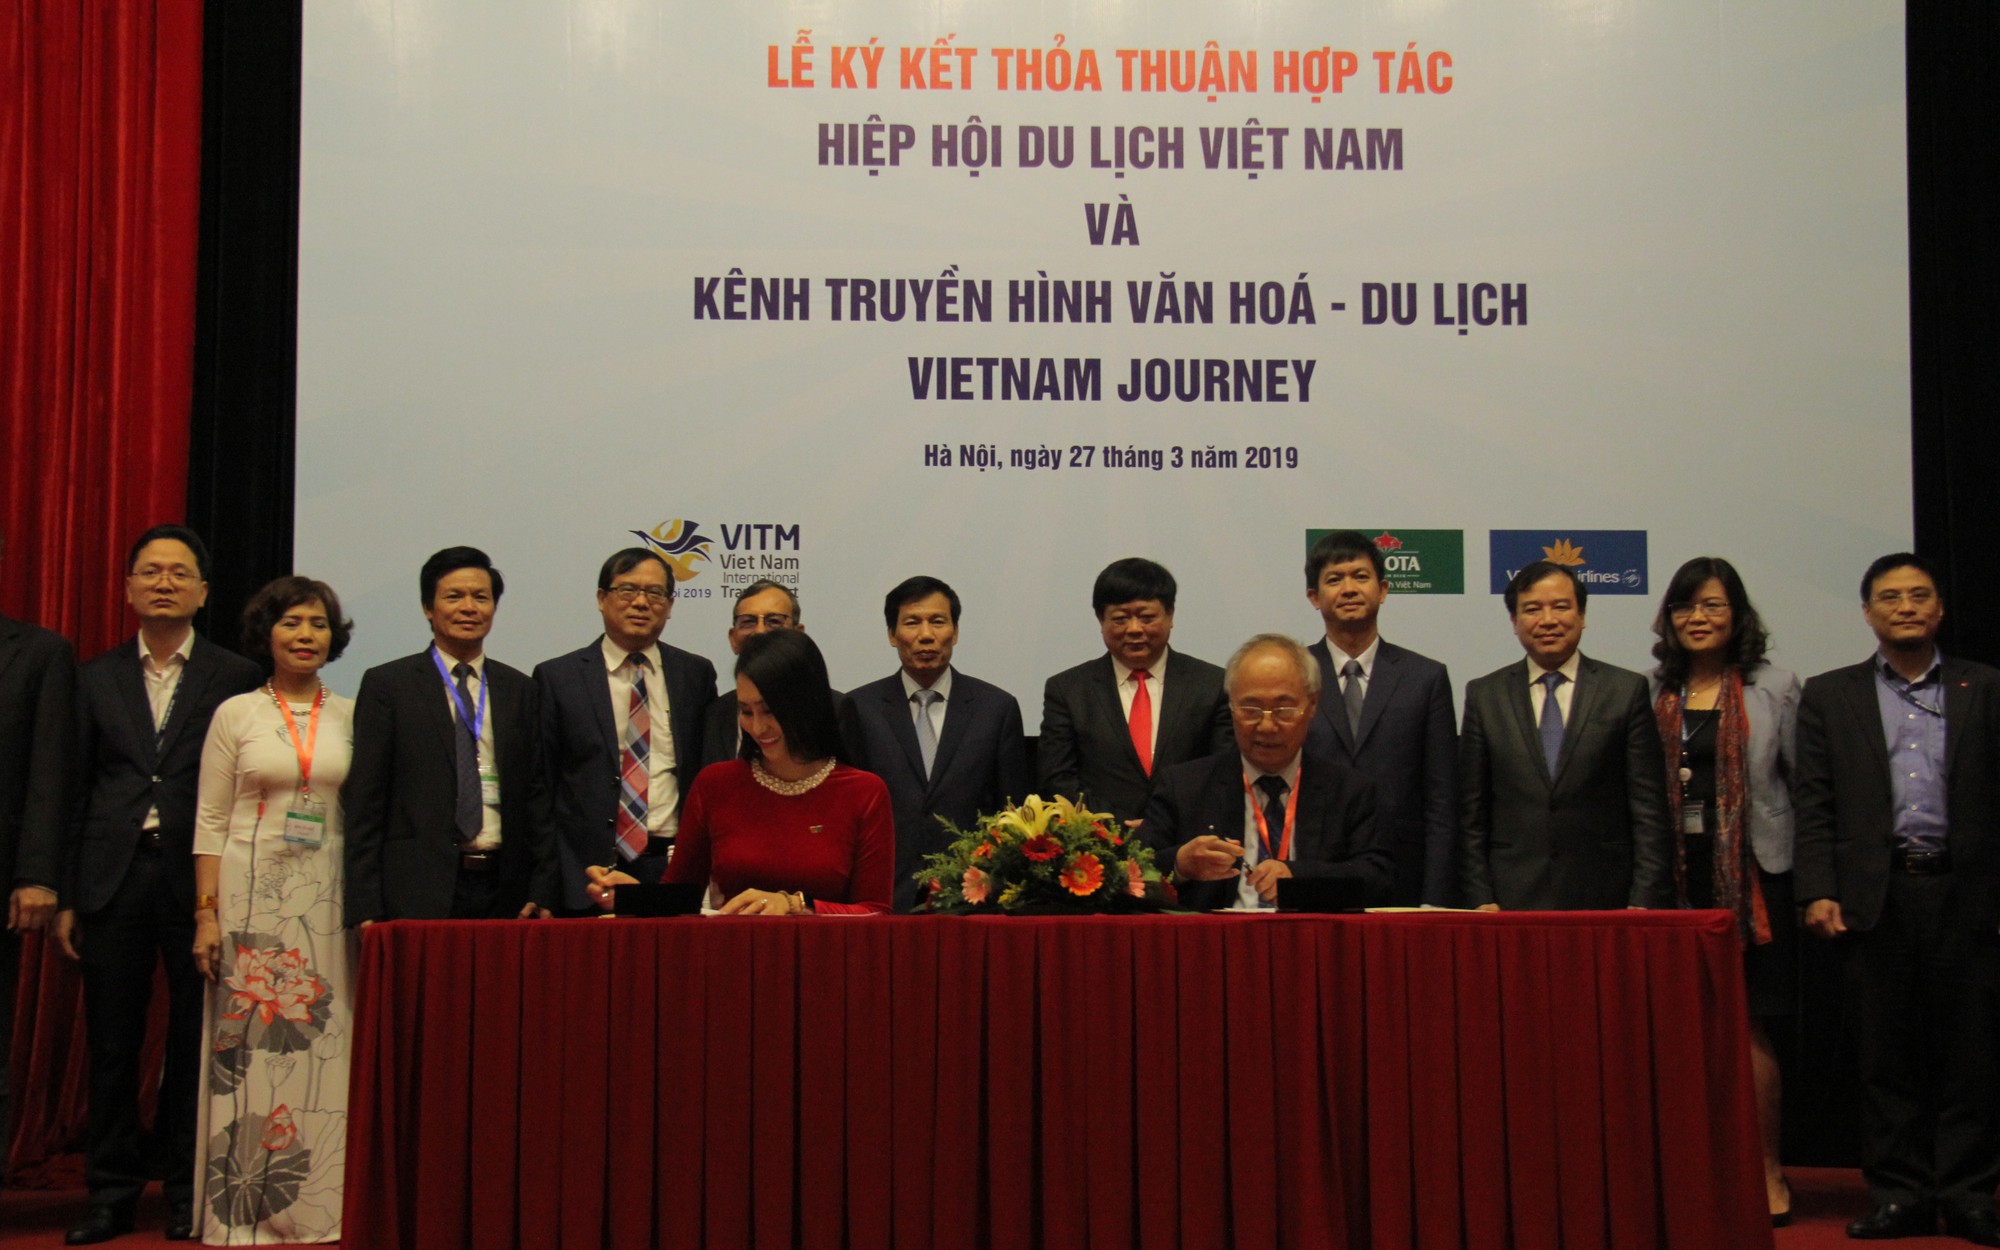 Hiệp Hội Du lịch Việt Nam ký kết thỏa thuận với Kênh Truyền hình Đài Tiếng nói Việt Nam